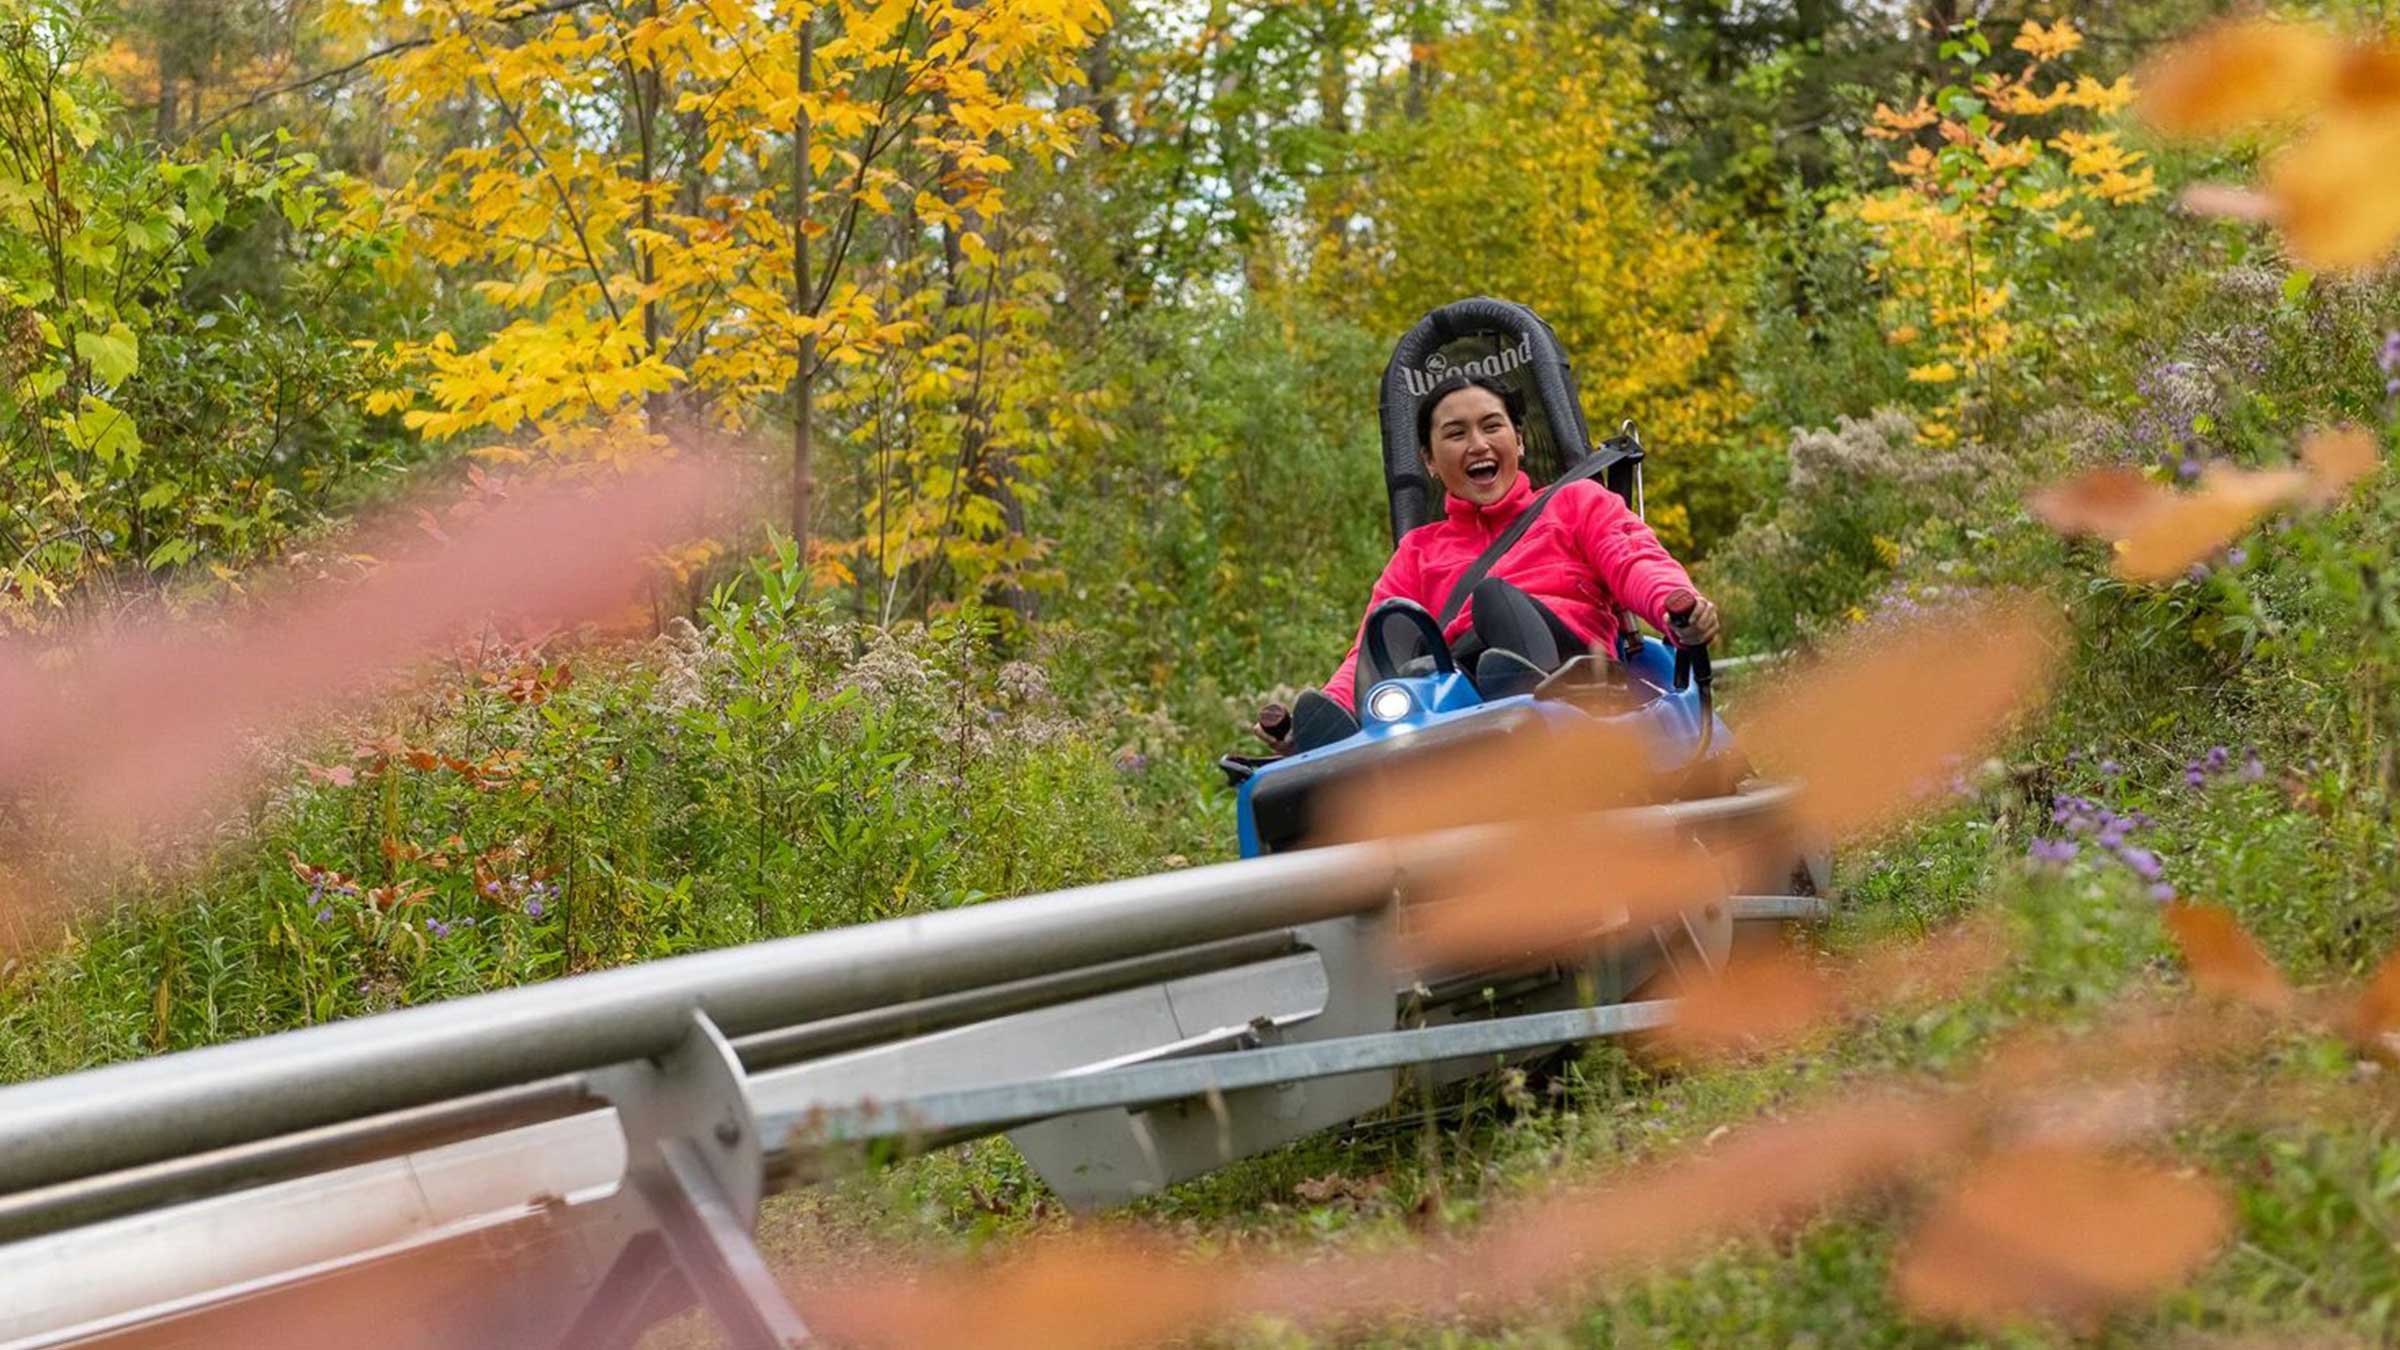 women happy on mountain coaster in autumn